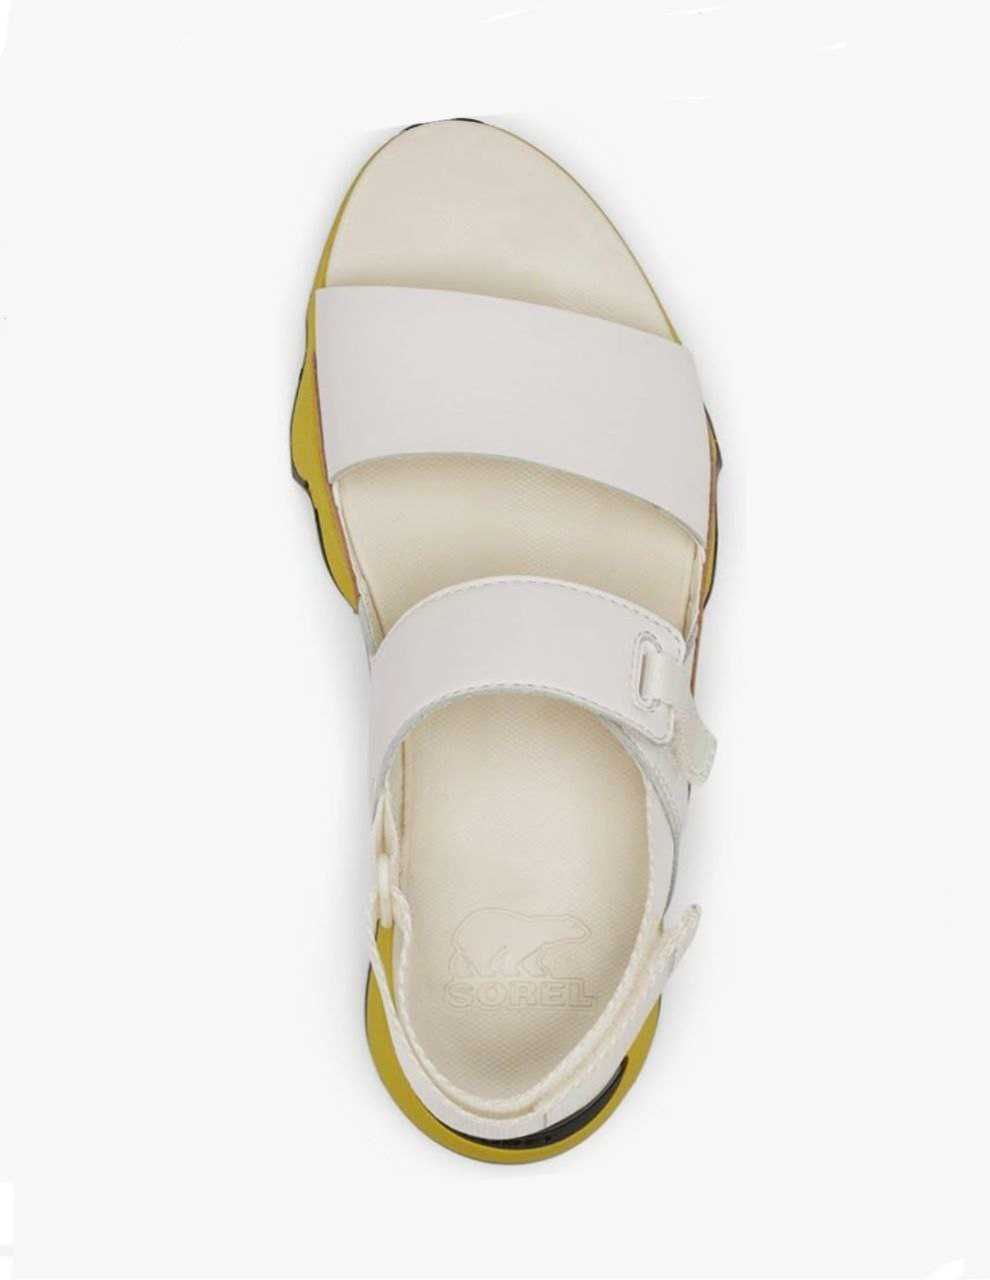 Sorel Kinetic Sandal жіночі босоніжки 38, 38.5, 39 р